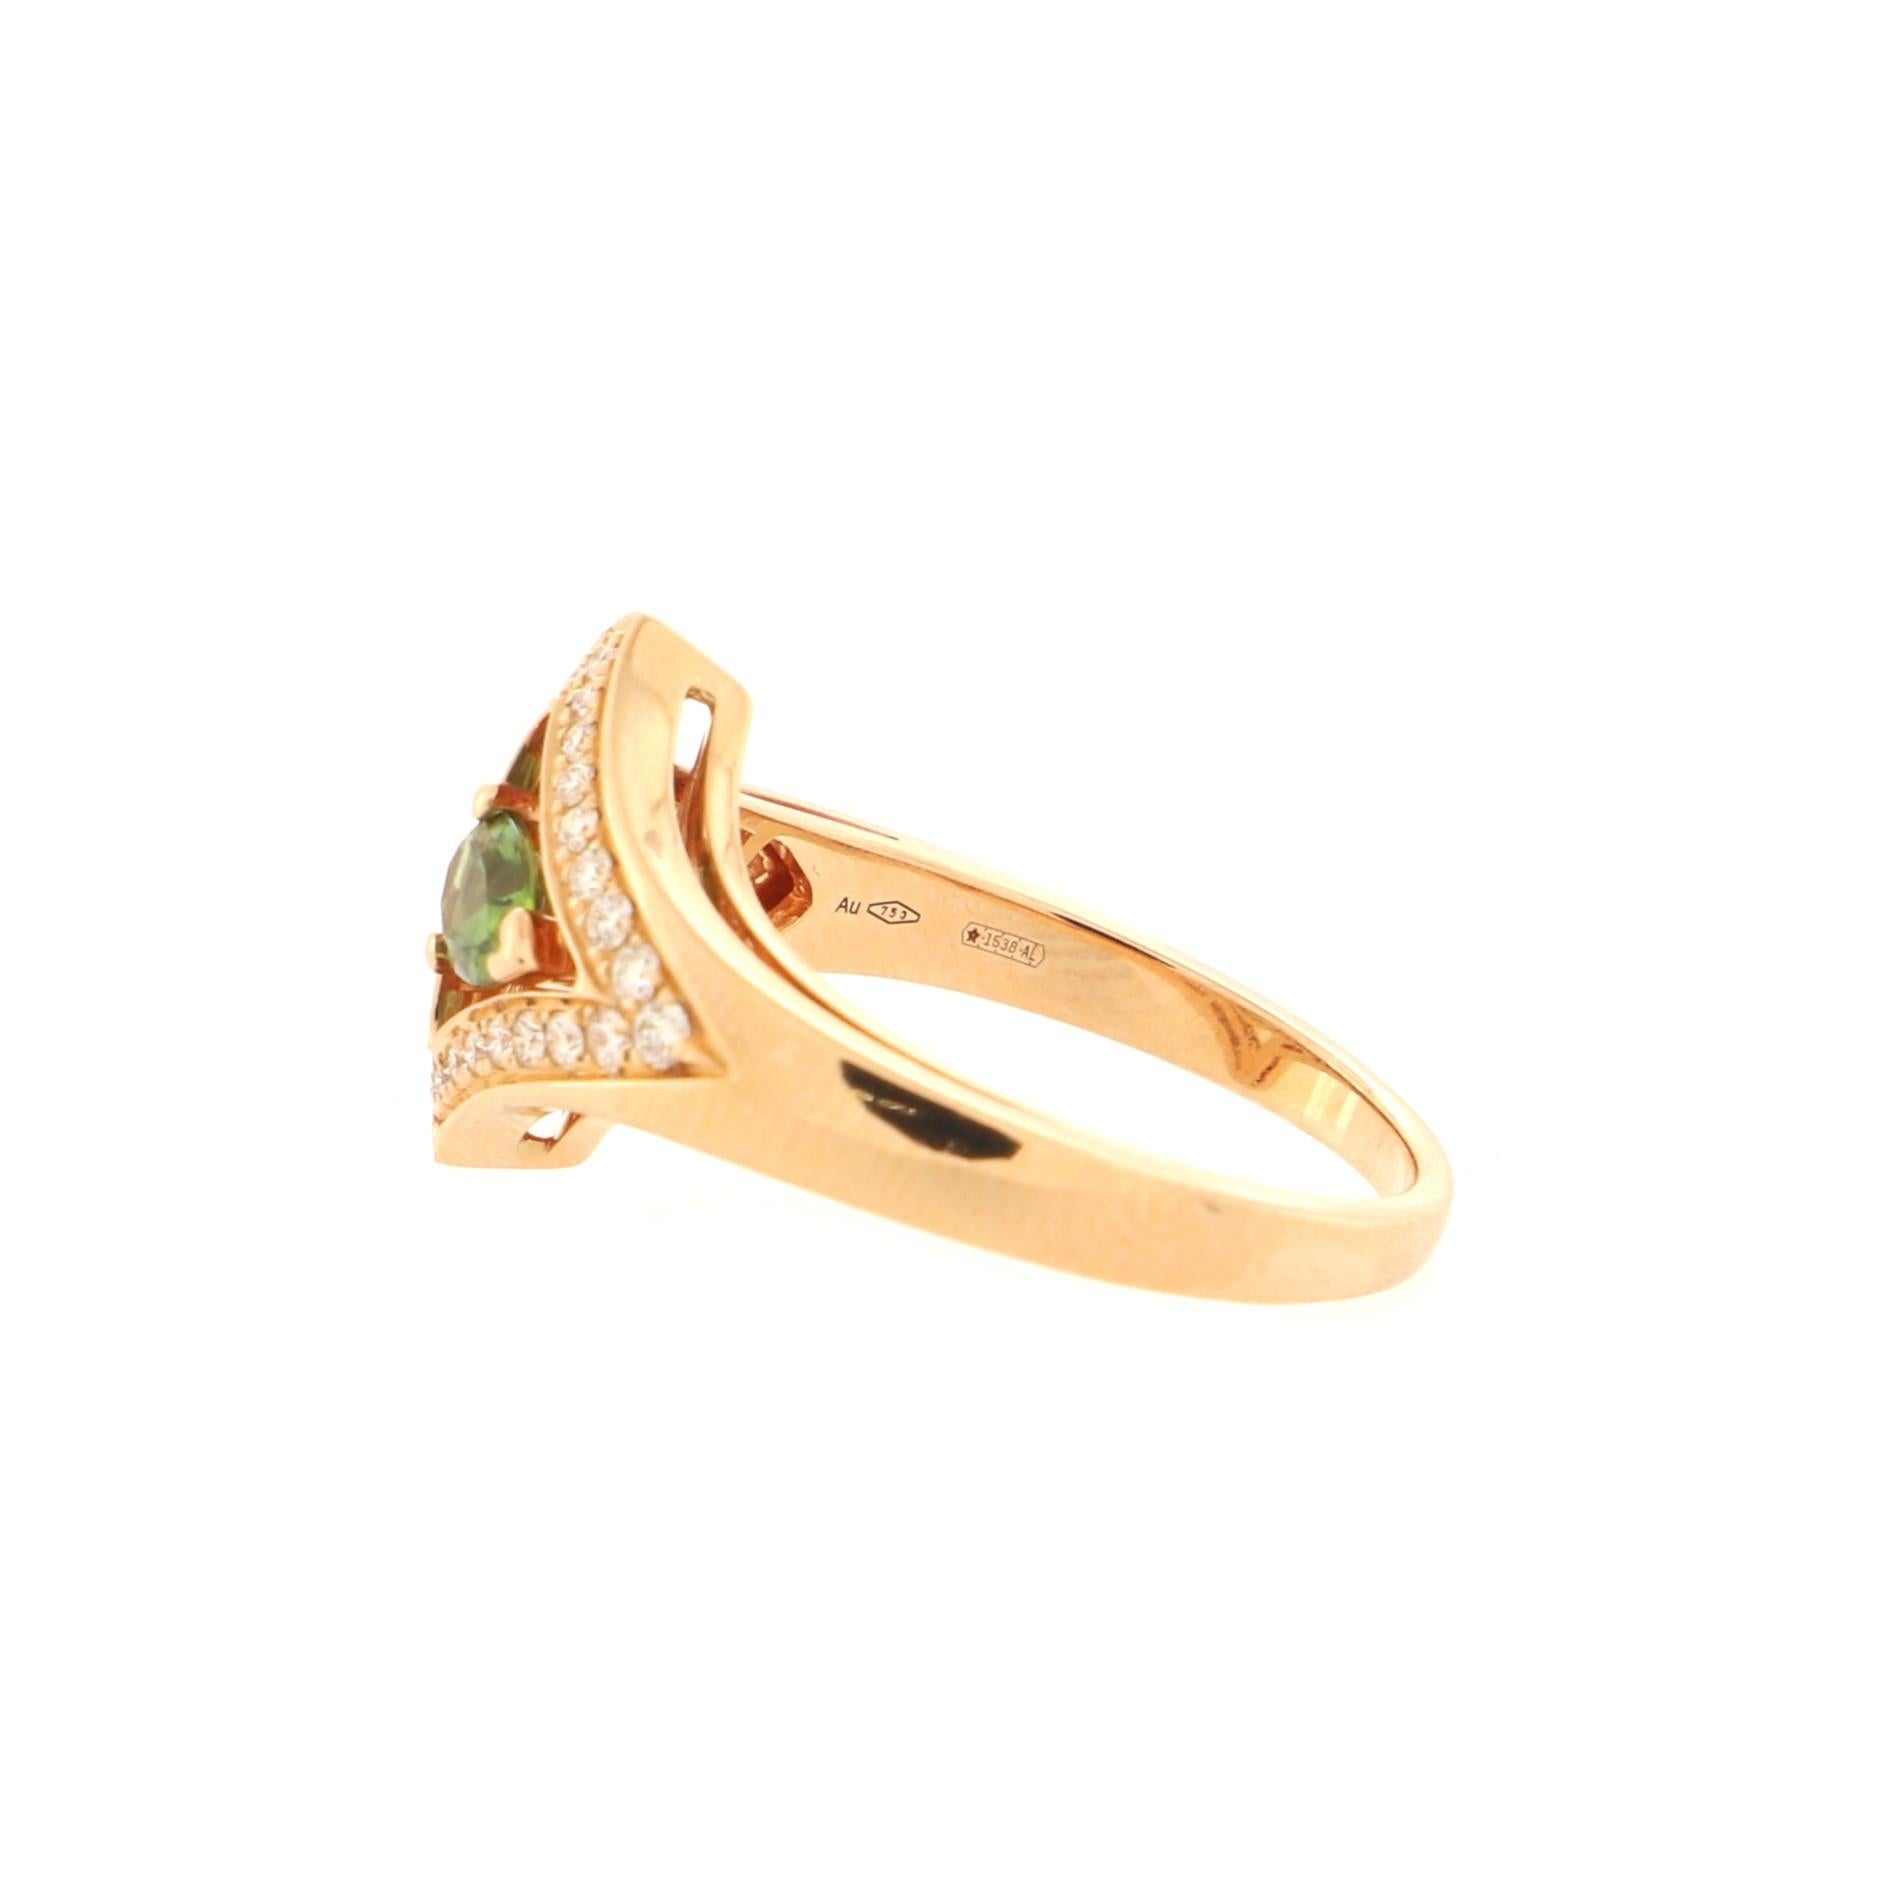 Bvlgari Diva's Dream Openwork Ring 18k Rose Gold with Diamonds and Green 1